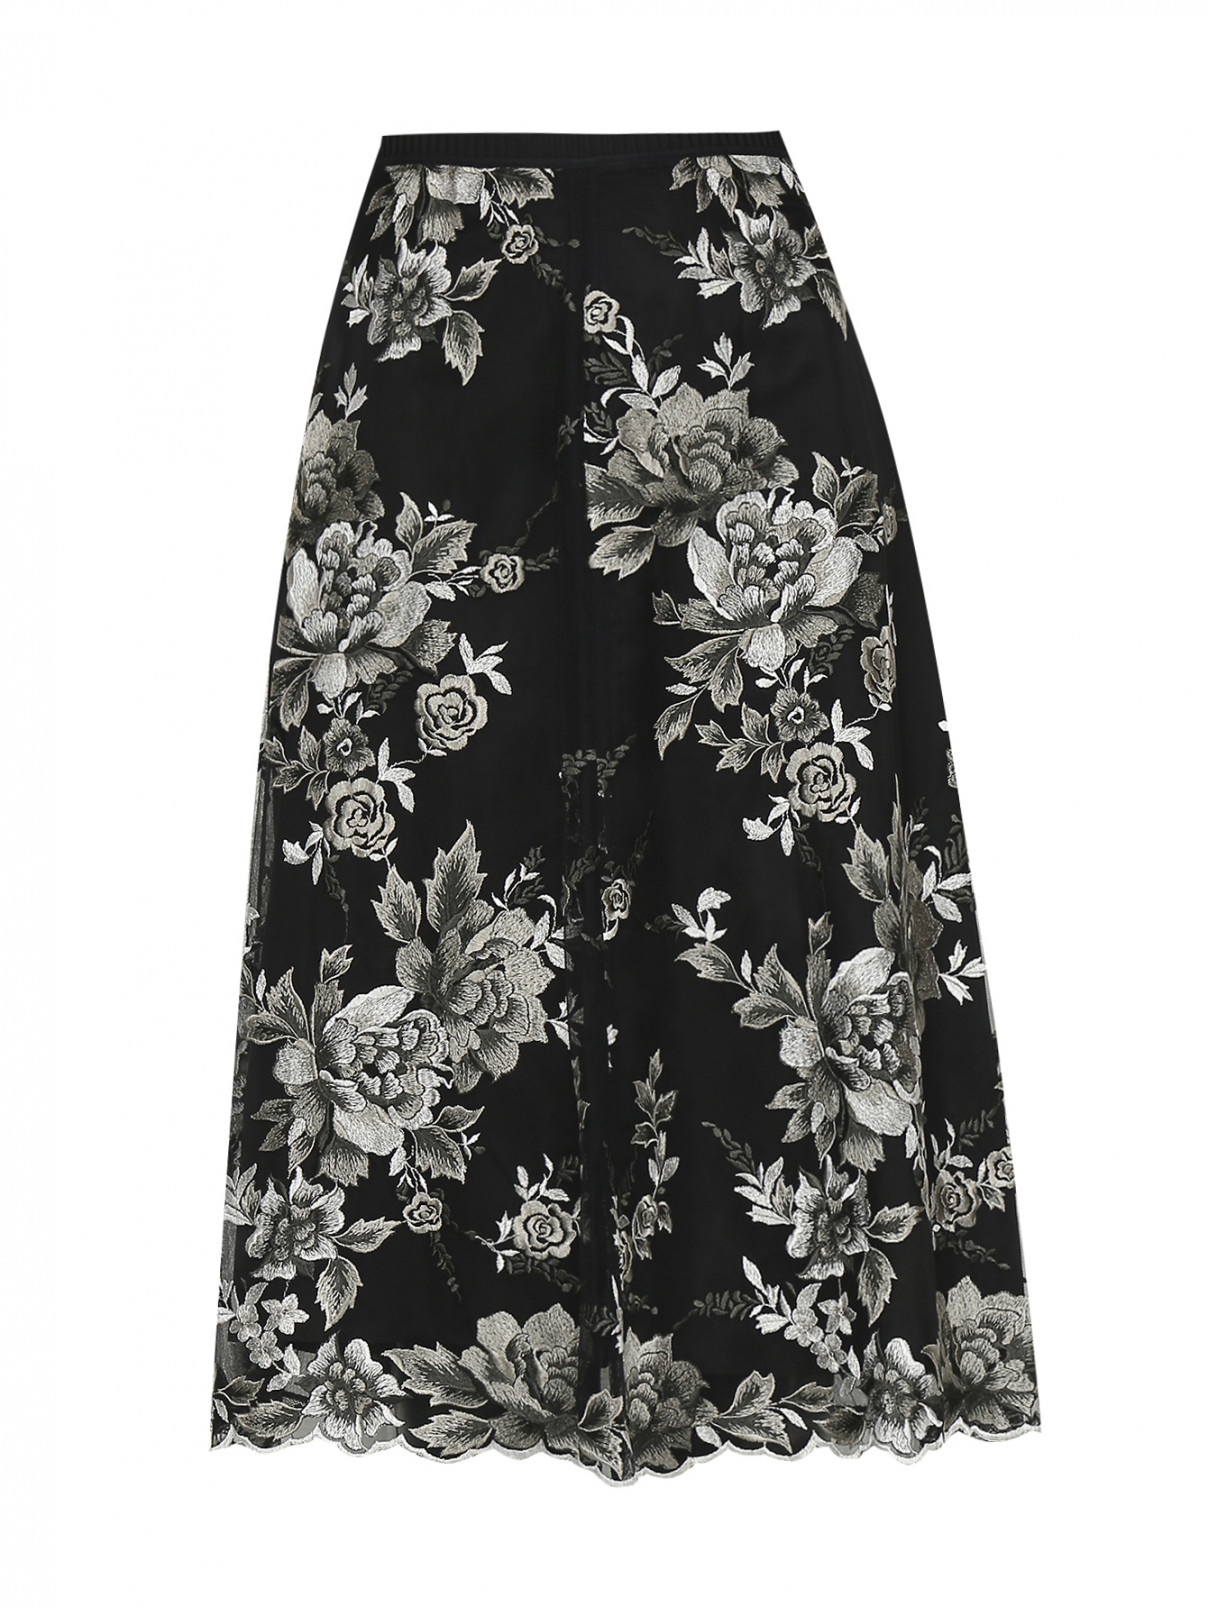 Юбка-миди с декоративной вышивкой Antonio Marras  –  Общий вид  – Цвет:  Черный